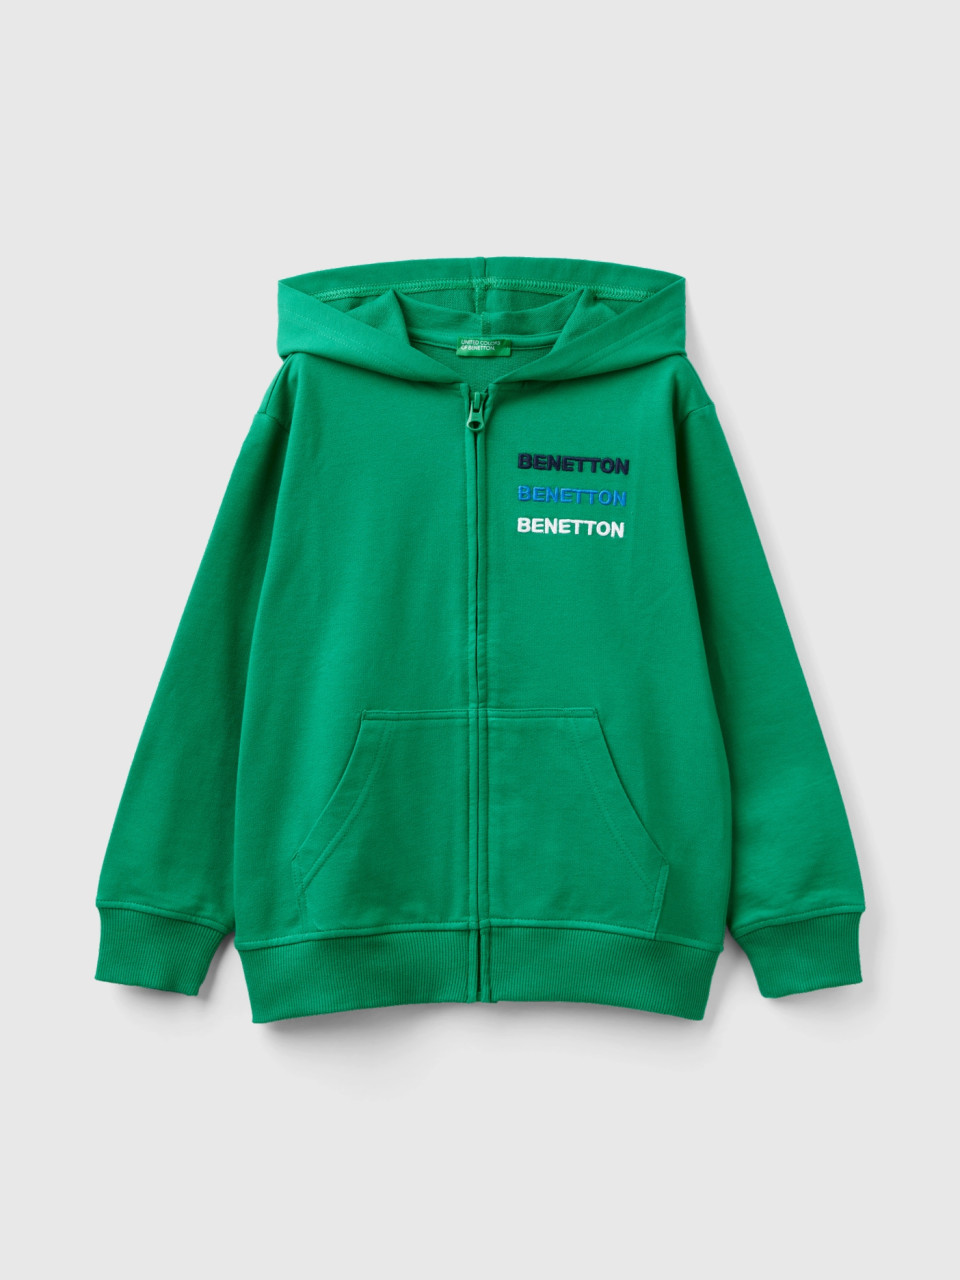 Benetton, Sweater Mit Reißverschluss Und Kapuze, Grün, male